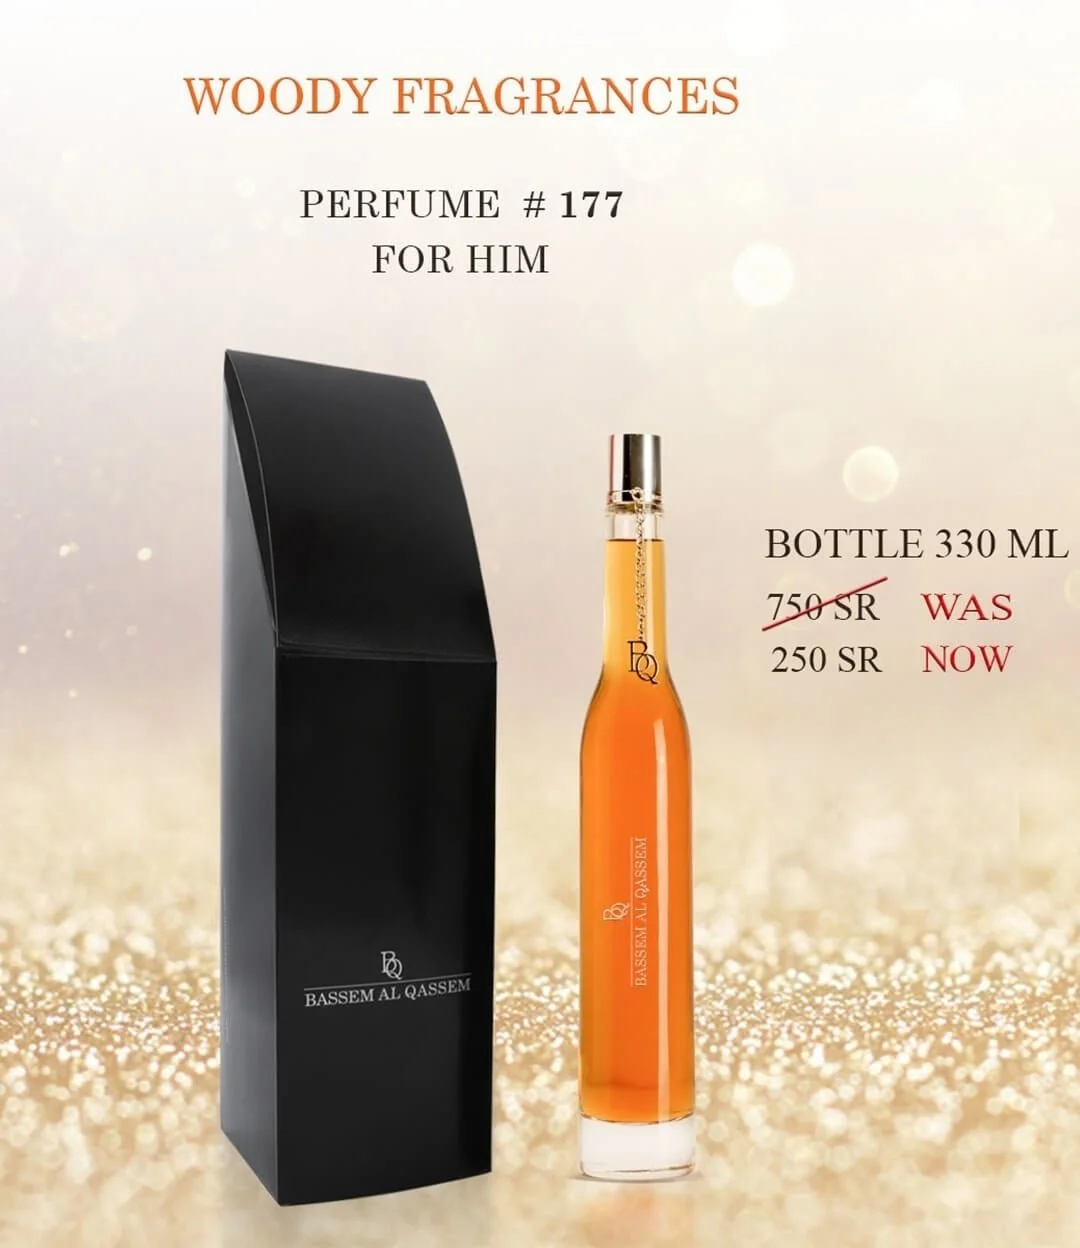 Perfume #177 Woody Fragrance for Him by Bassem Al Qassem 